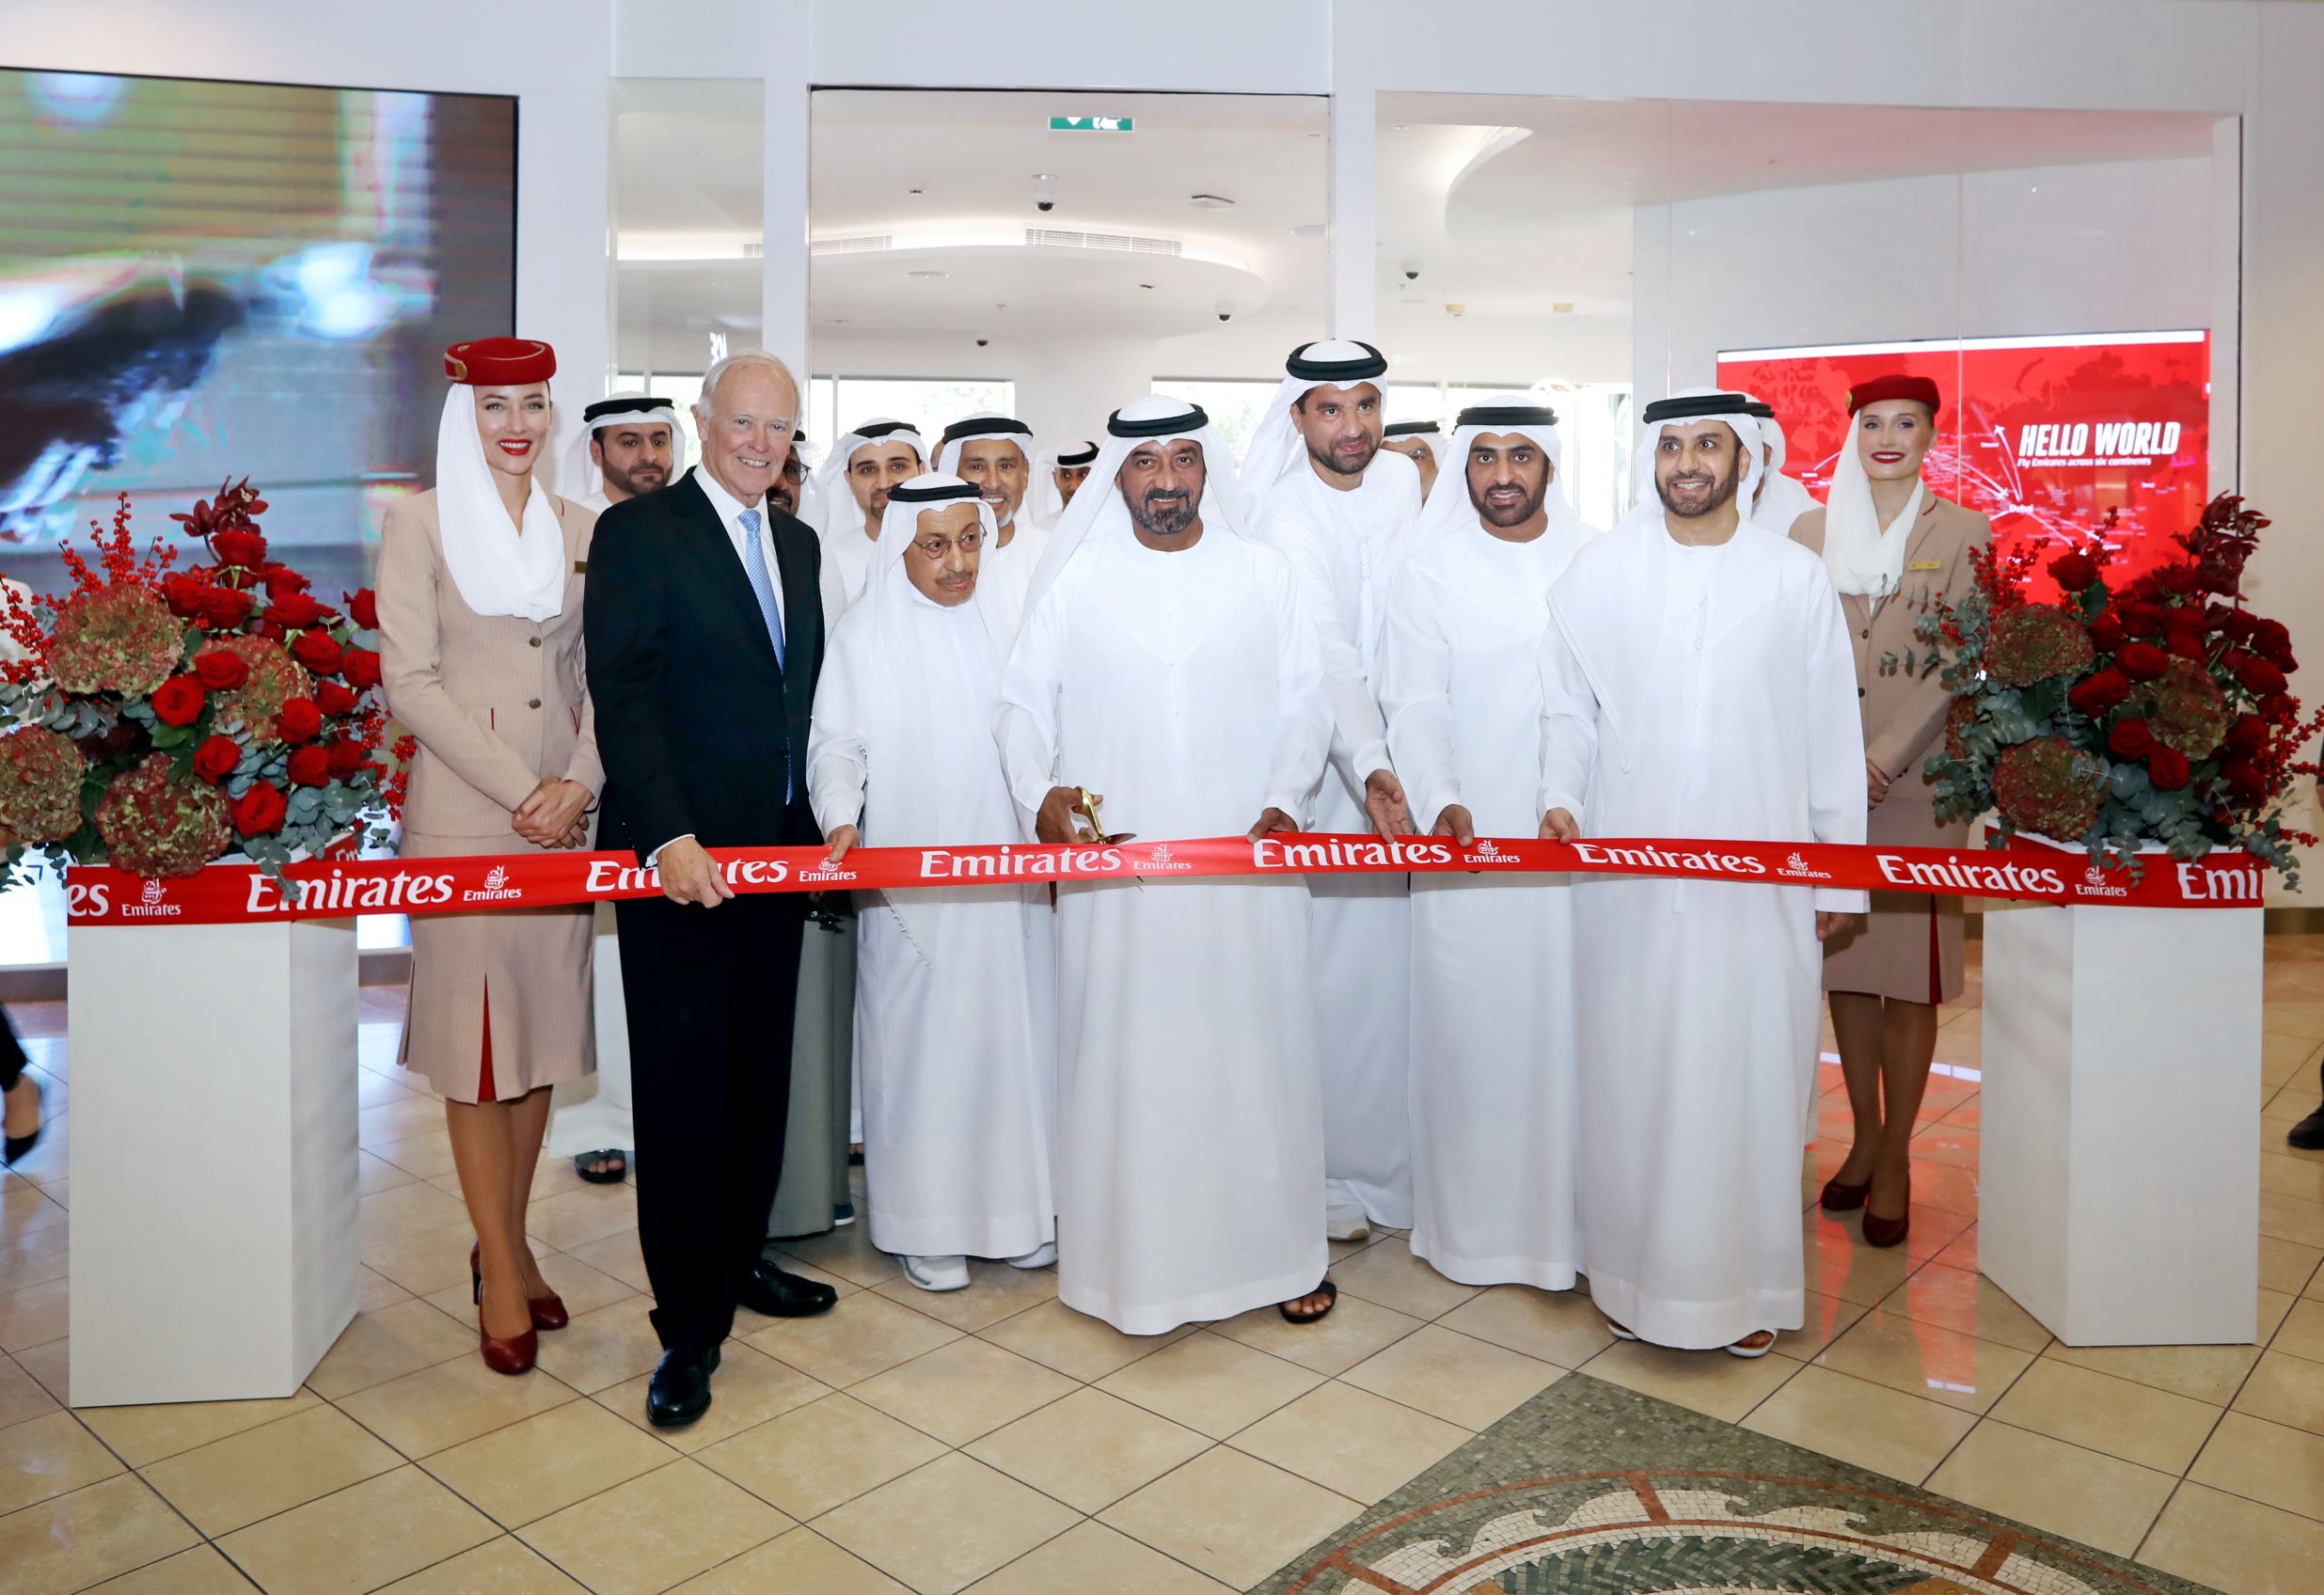 Lễ cắt băng khai trương cửa hàng Emirates World